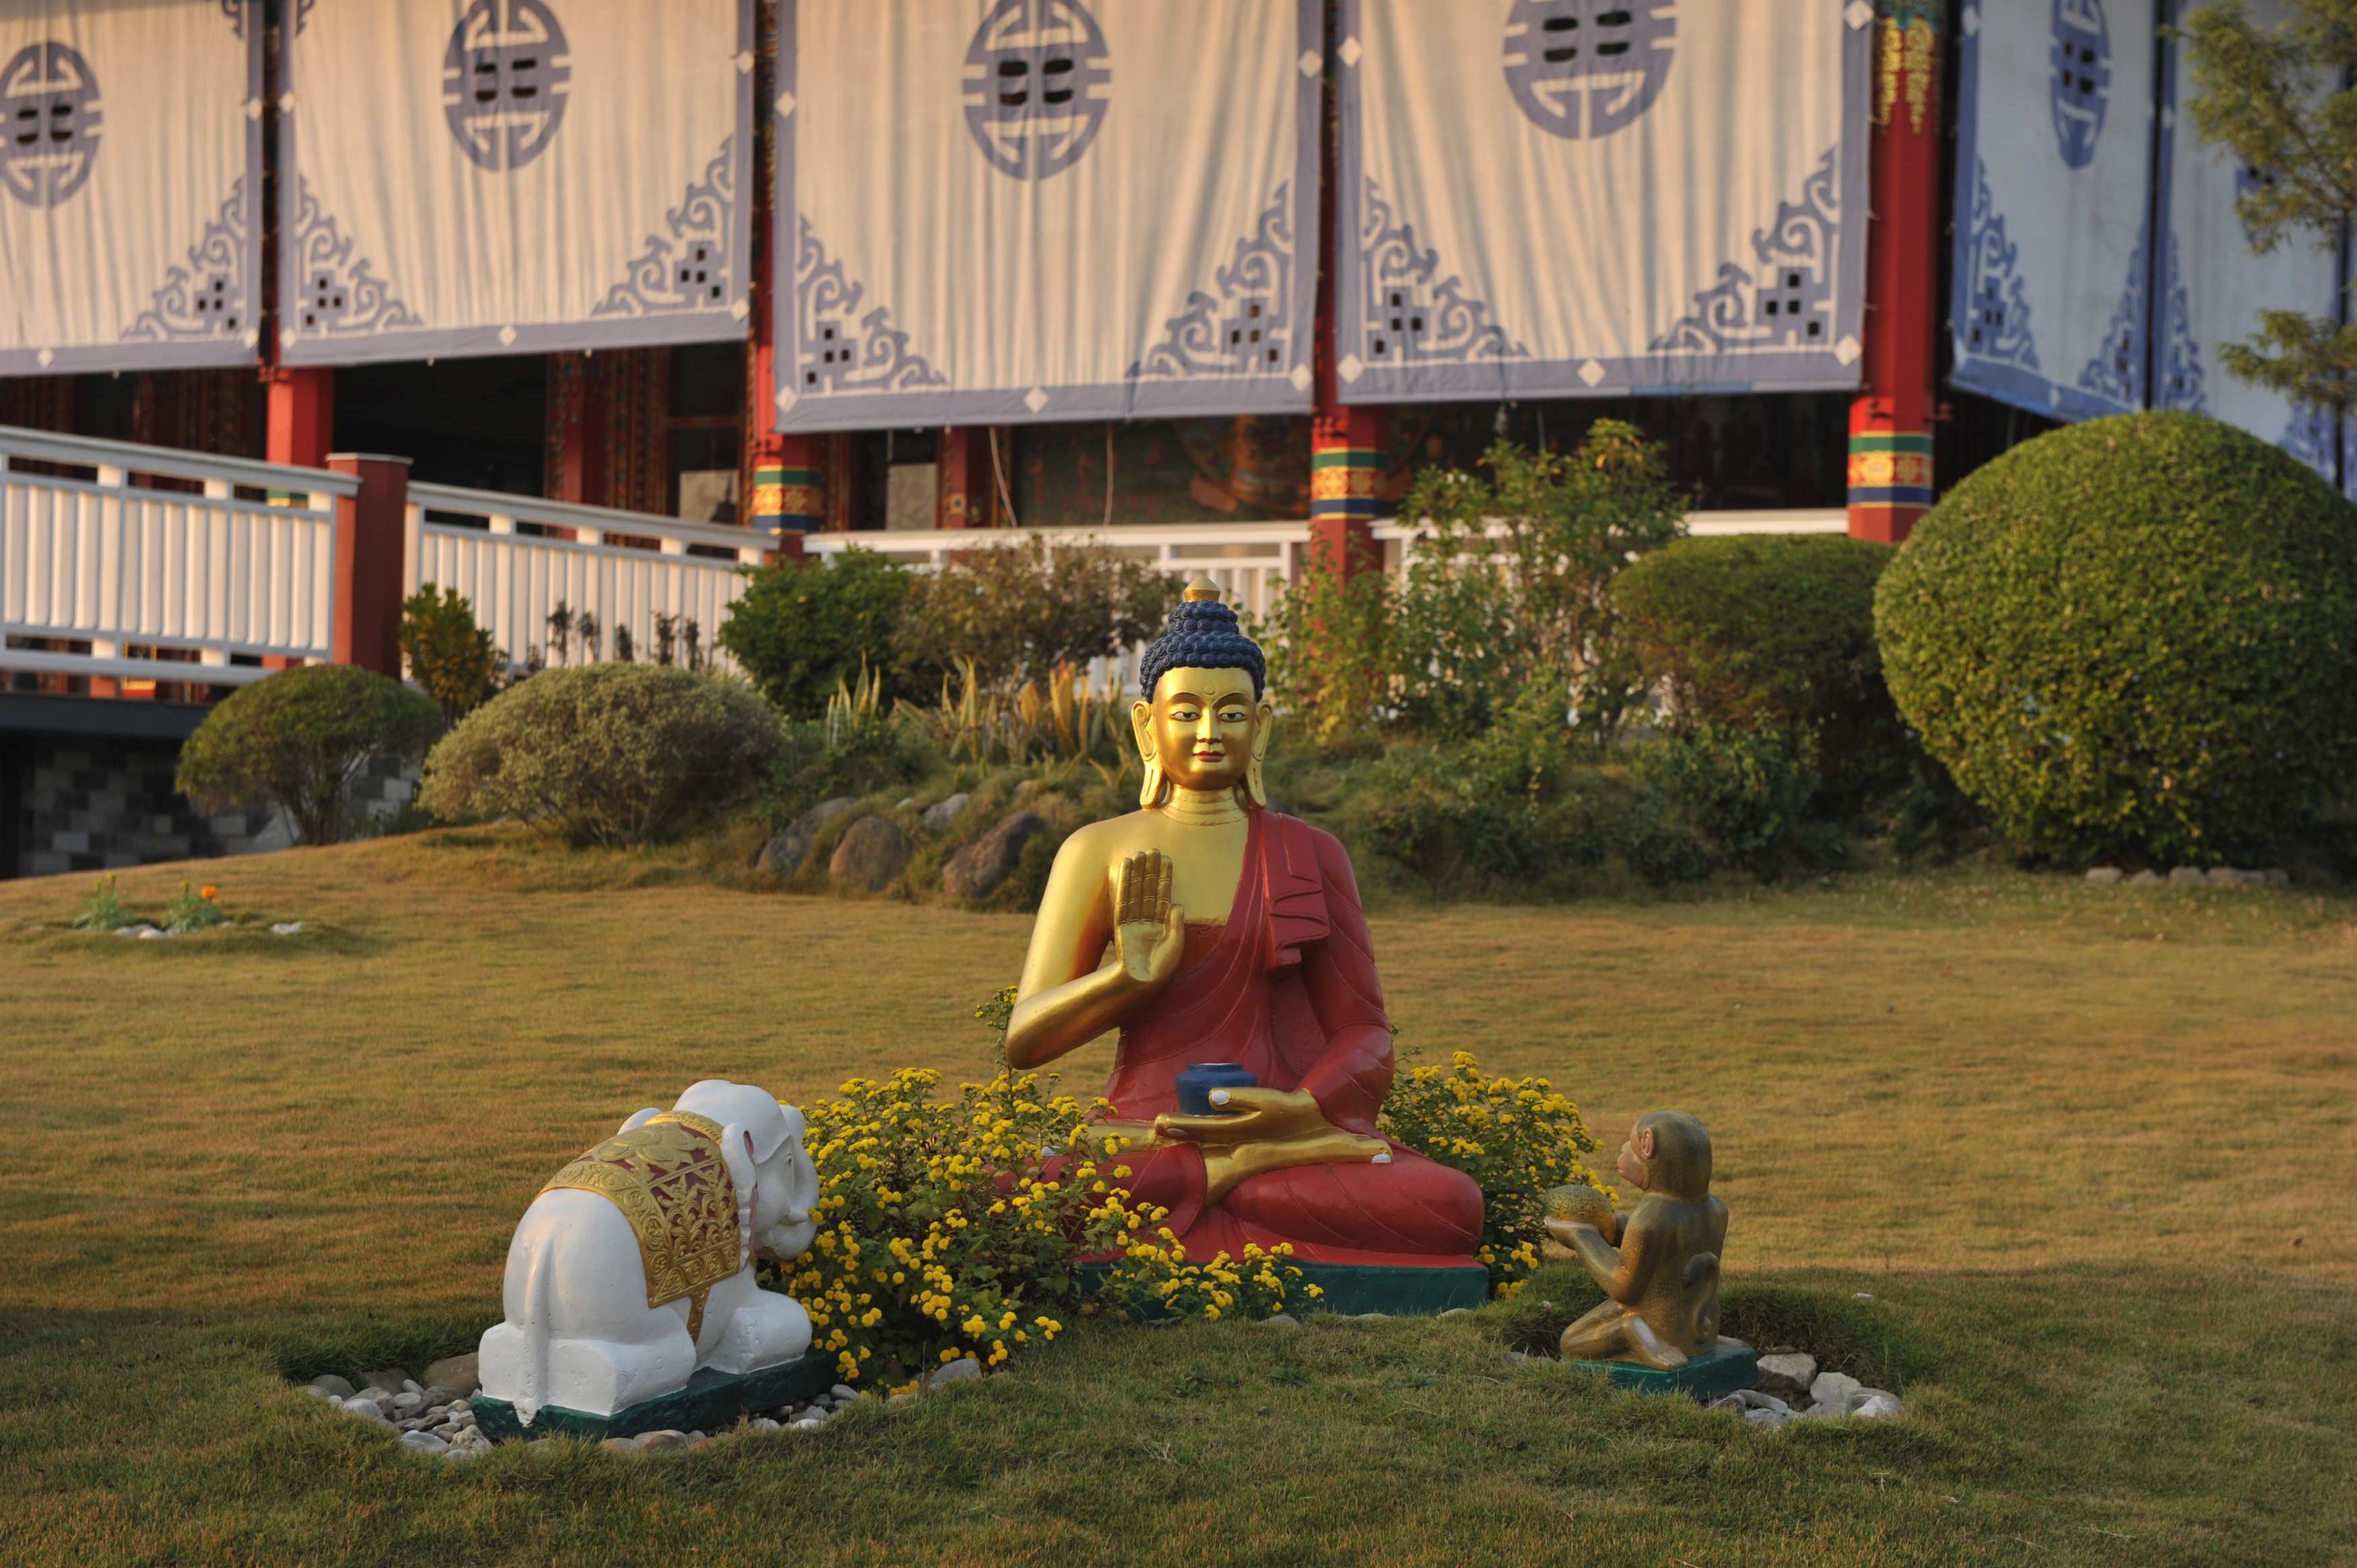 Statua del Buddha